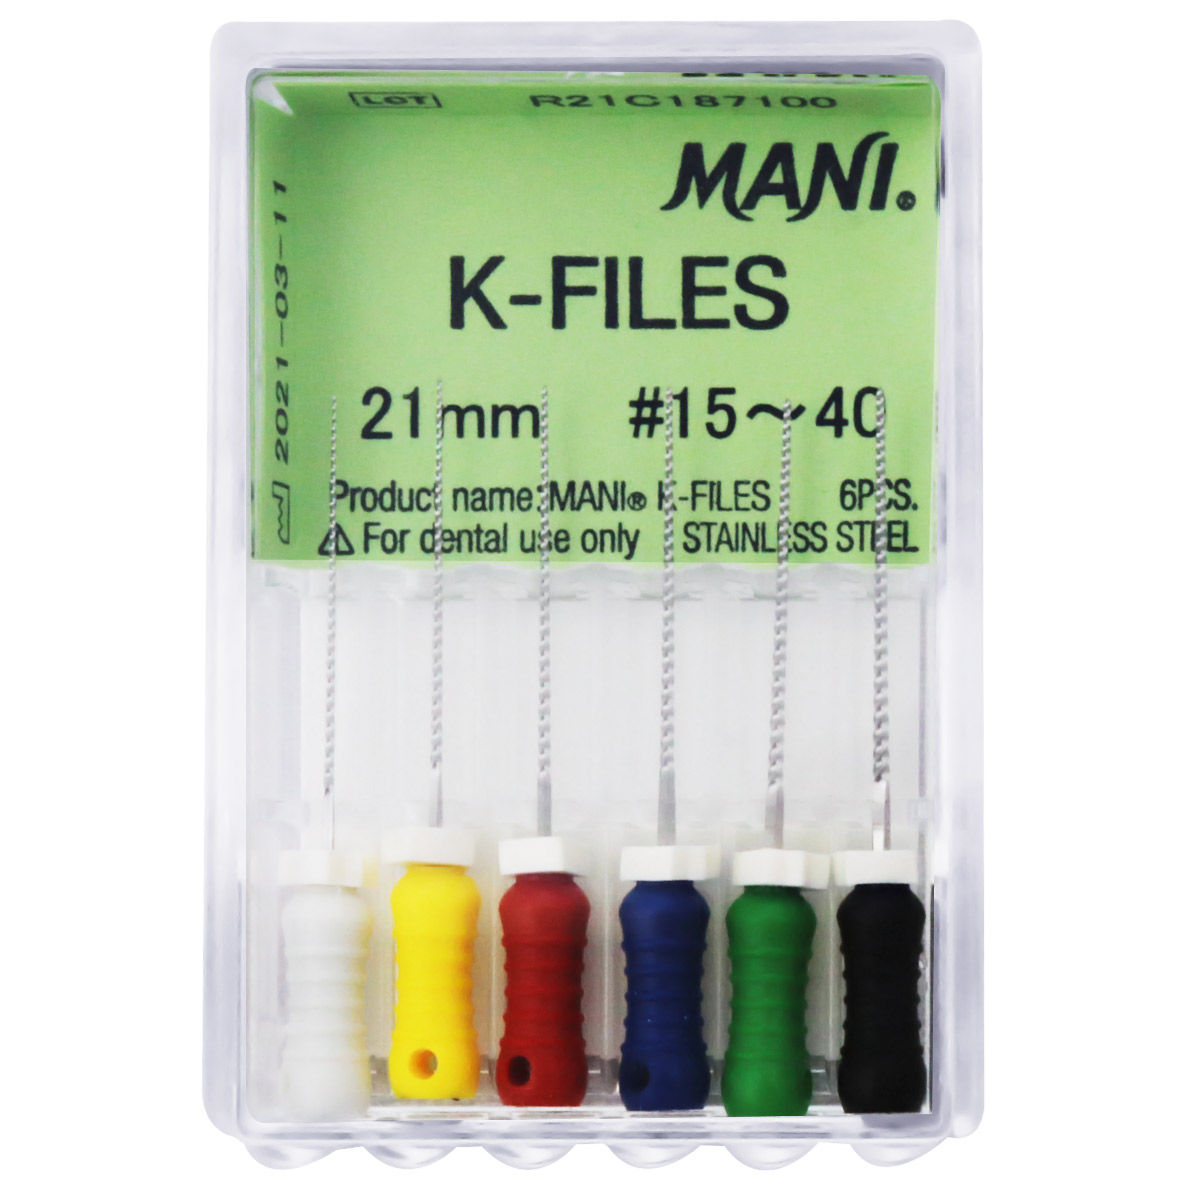 K-File 21mm #15-40 - Mani